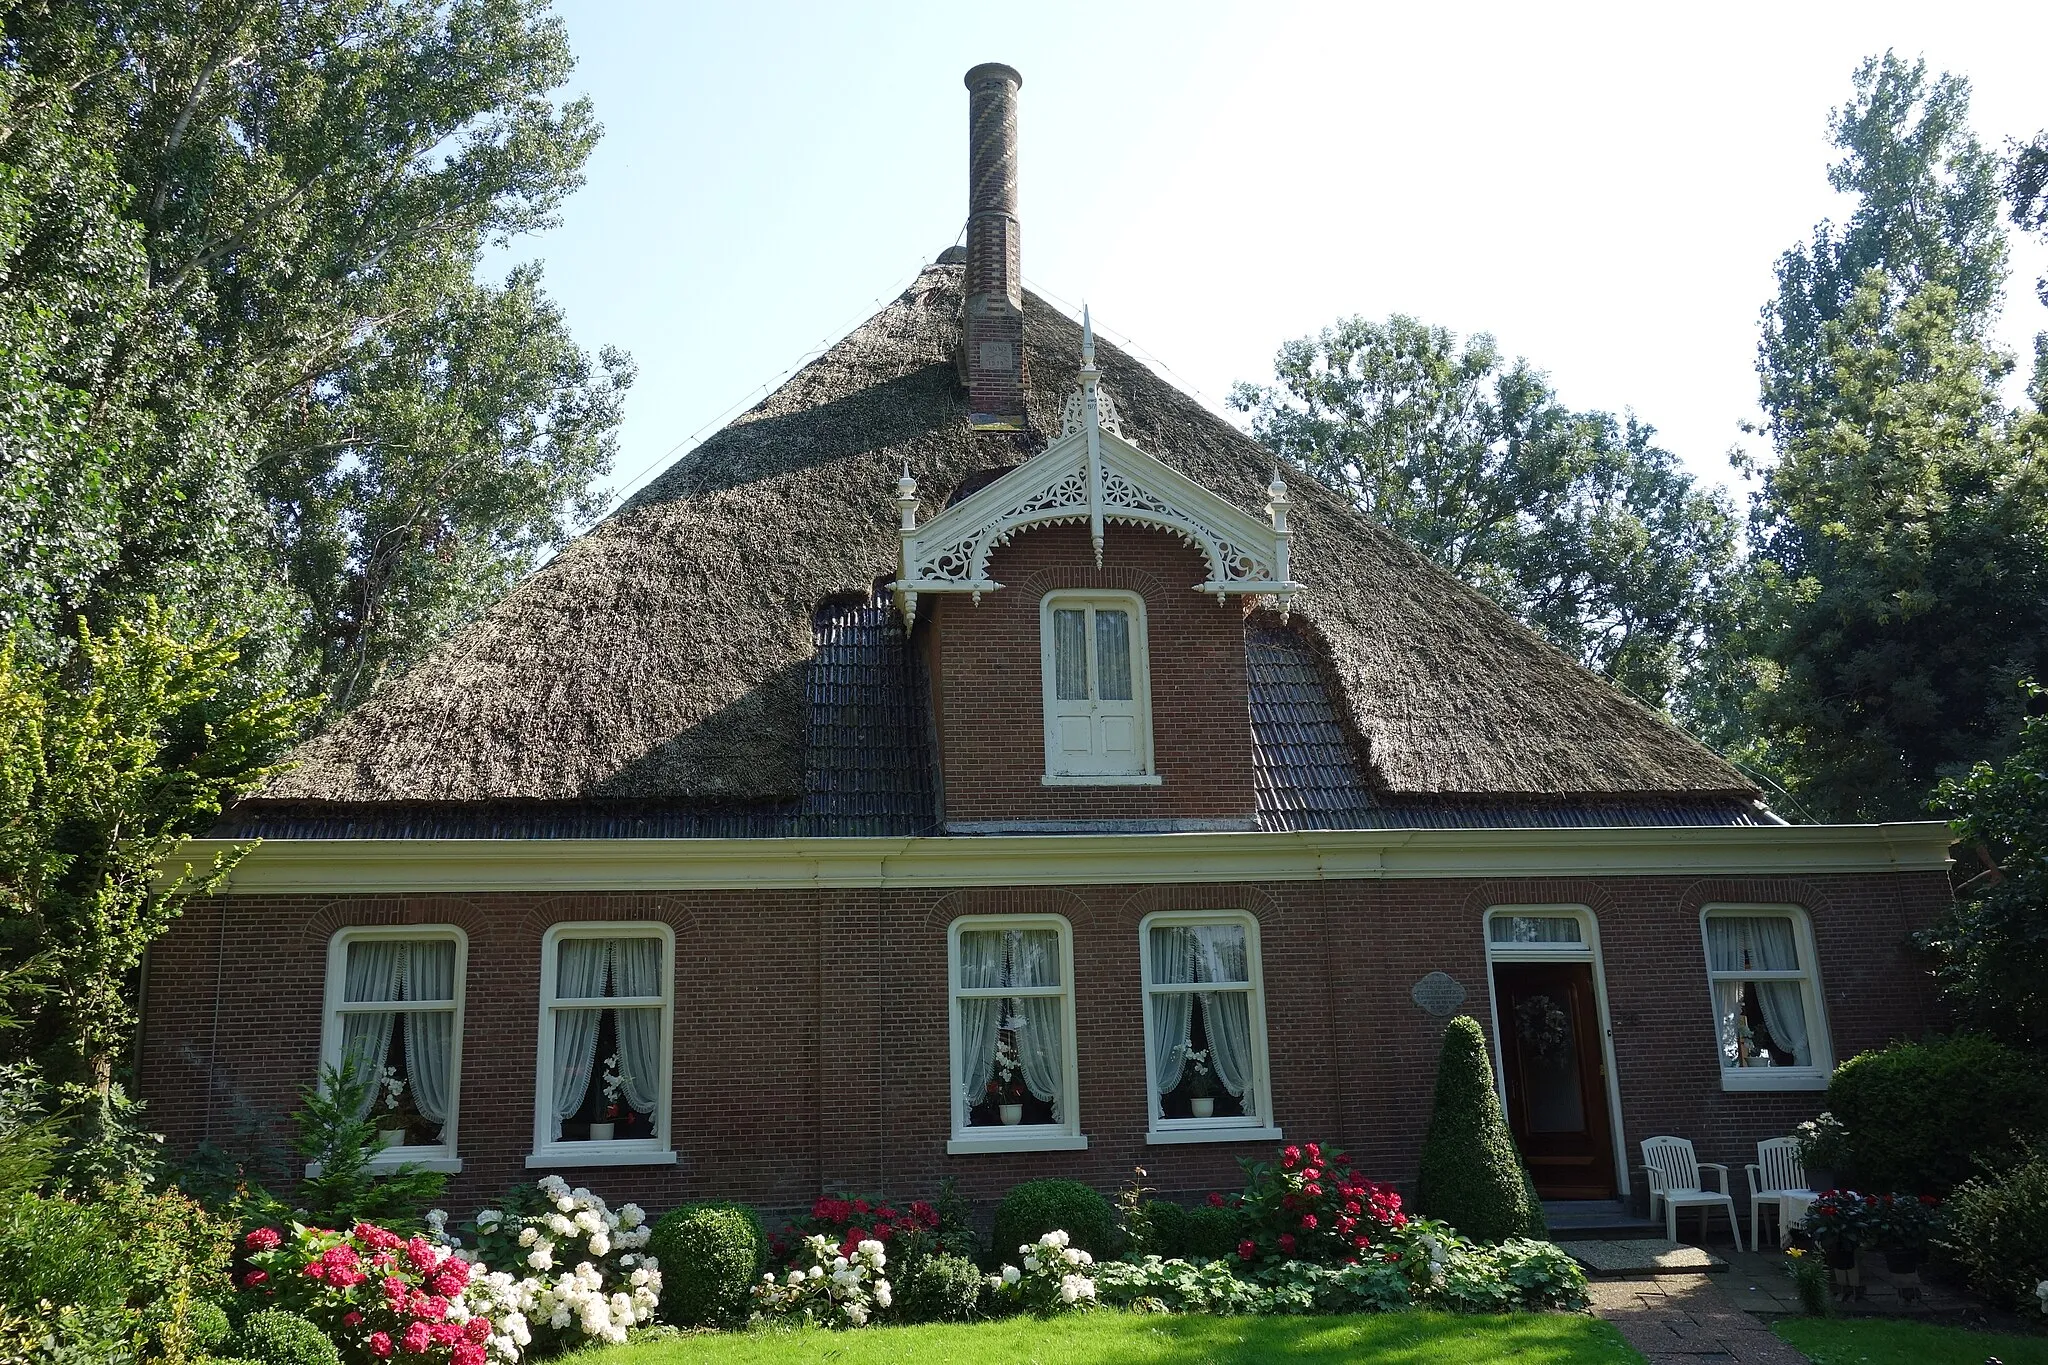 Photo showing: Stolpboerderij van het Noord-Hollandse type aan de Bangert 28 in Andijk. Boerderij is in 1894 gebouwd, de schoorsteen is in 1919 toegevoegd en de dakkapel in 1977 (allen volgens de jaartallen op de stukken zelf)